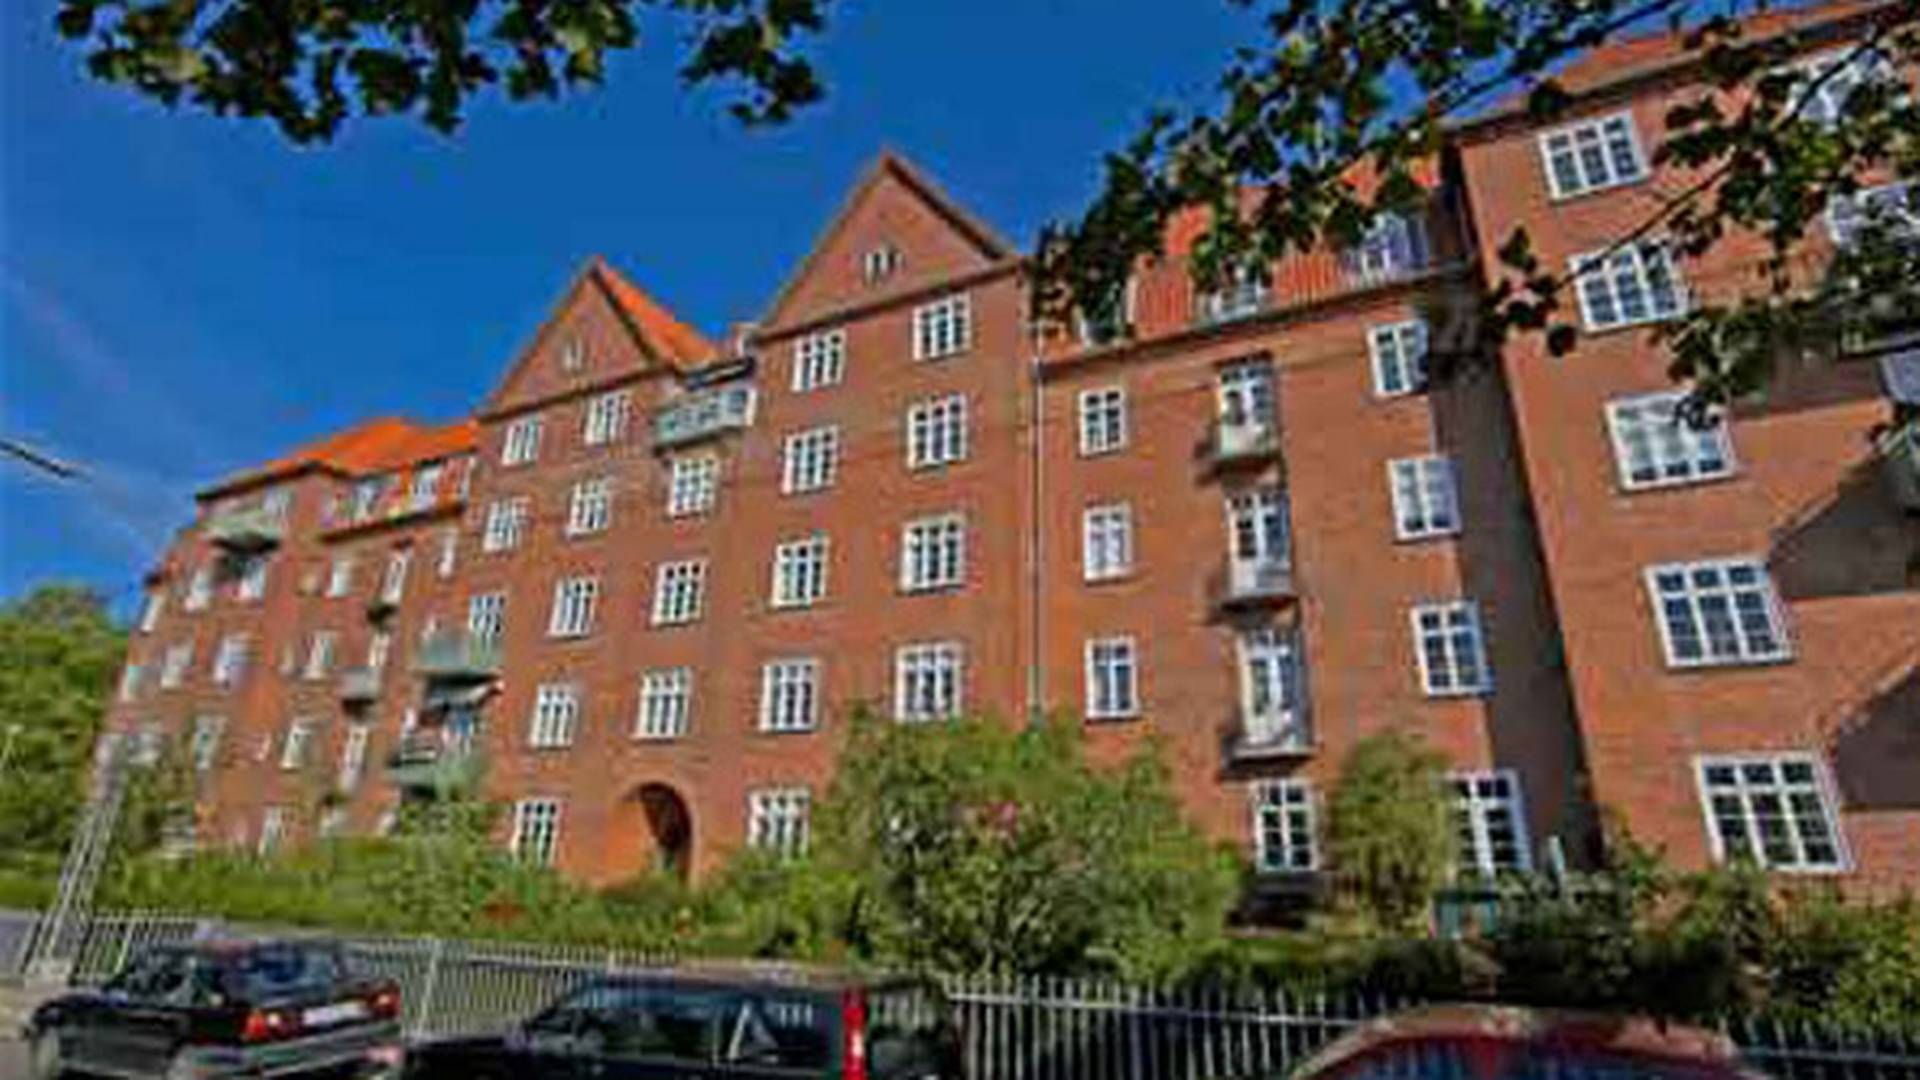 Svalegården på Frederiksberg er en af de tre ejendomme, som Blackstone er ved at købe af Frederiksberg Boligfond. | Foto: Frederiksberg Boligfond.